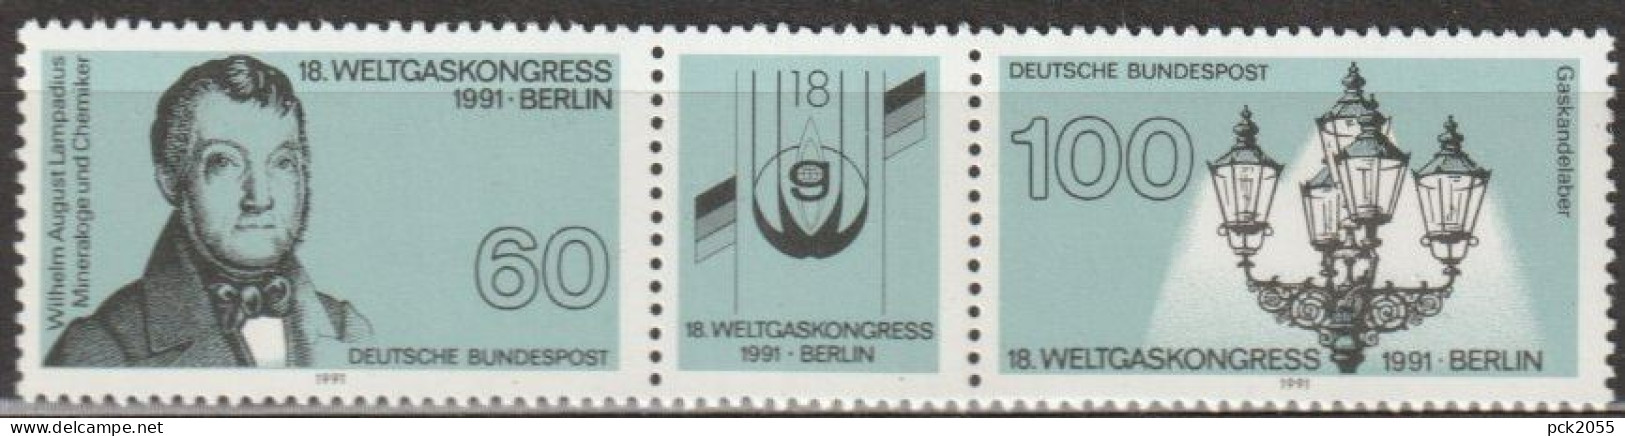 BRD 1991 MiNr.1537 - 1538 3er Streifen ** Postfrisch Weltgaskongress (A2574 )günstige Versandkoste - Ungebraucht